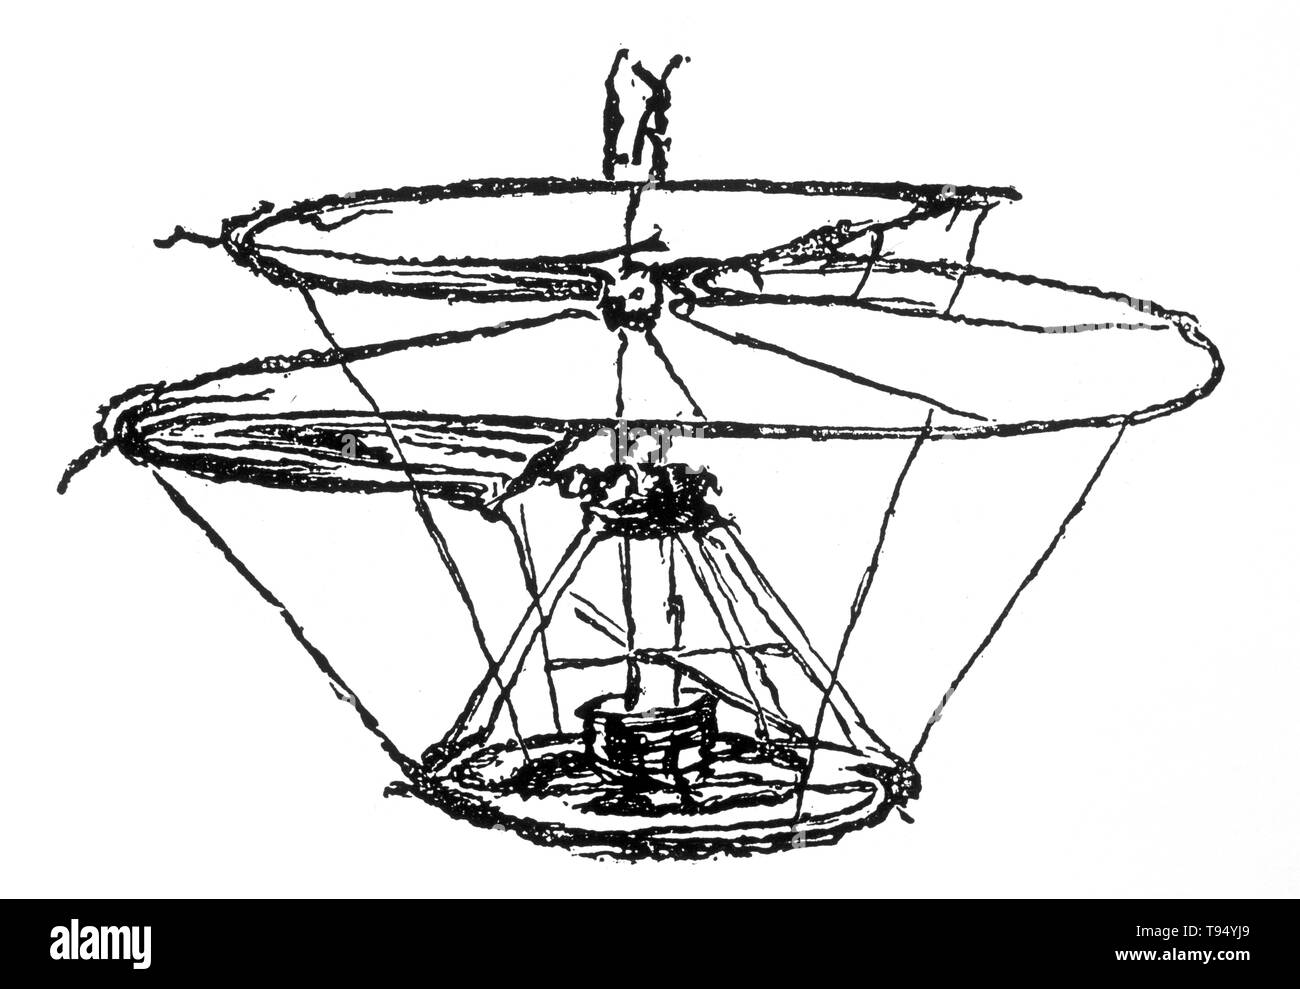 Un croquis de Léonard de Vinci d'une machine volante plus connu sous le nom de "vis d'air hélicoïdal' ou 'hélice'. Il a été conçu pour comprimer l'air d'obtenir vol, semblables à des hélicoptères modernes. Banque D'Images